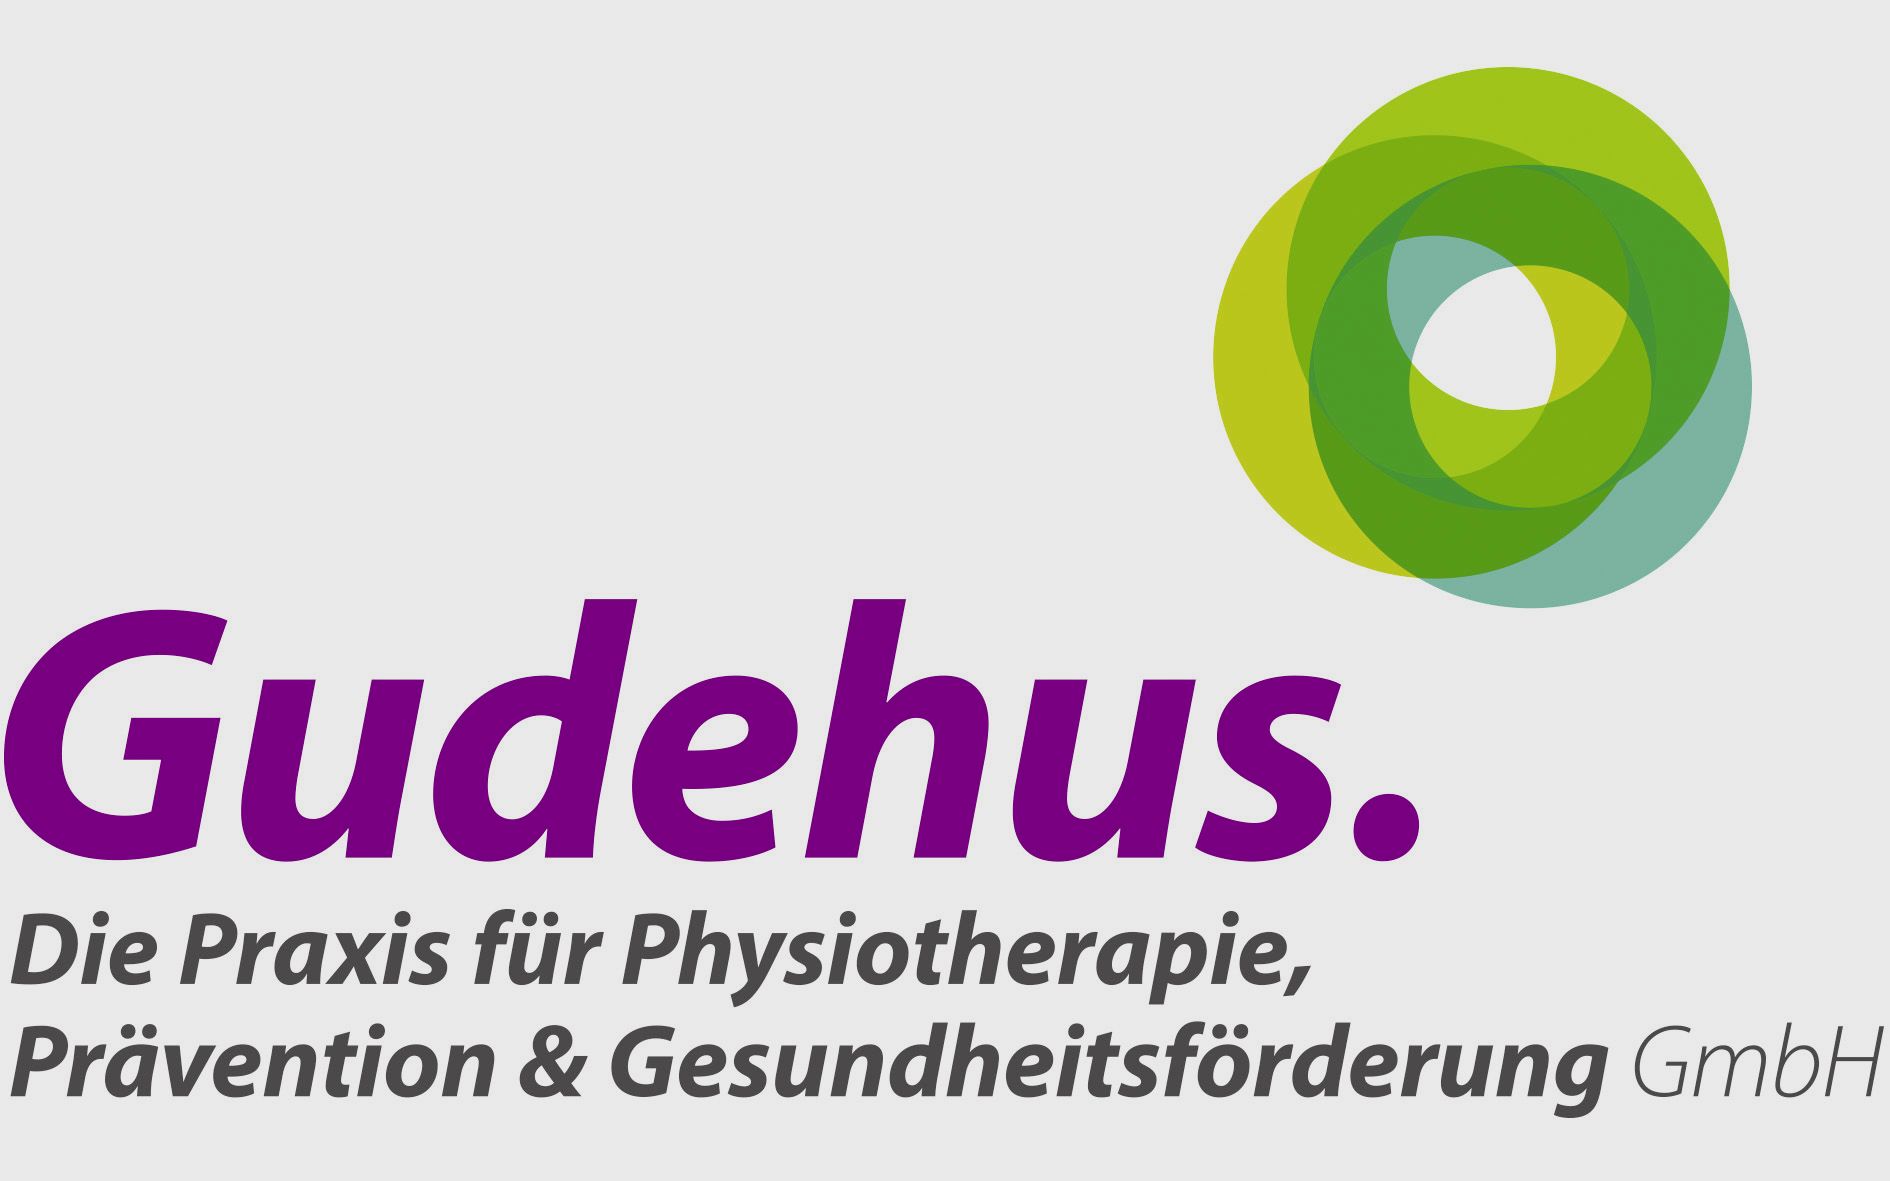 Gudehus. Die Praxis für Physiotherapie, Prävention & Gesundheitsförderung